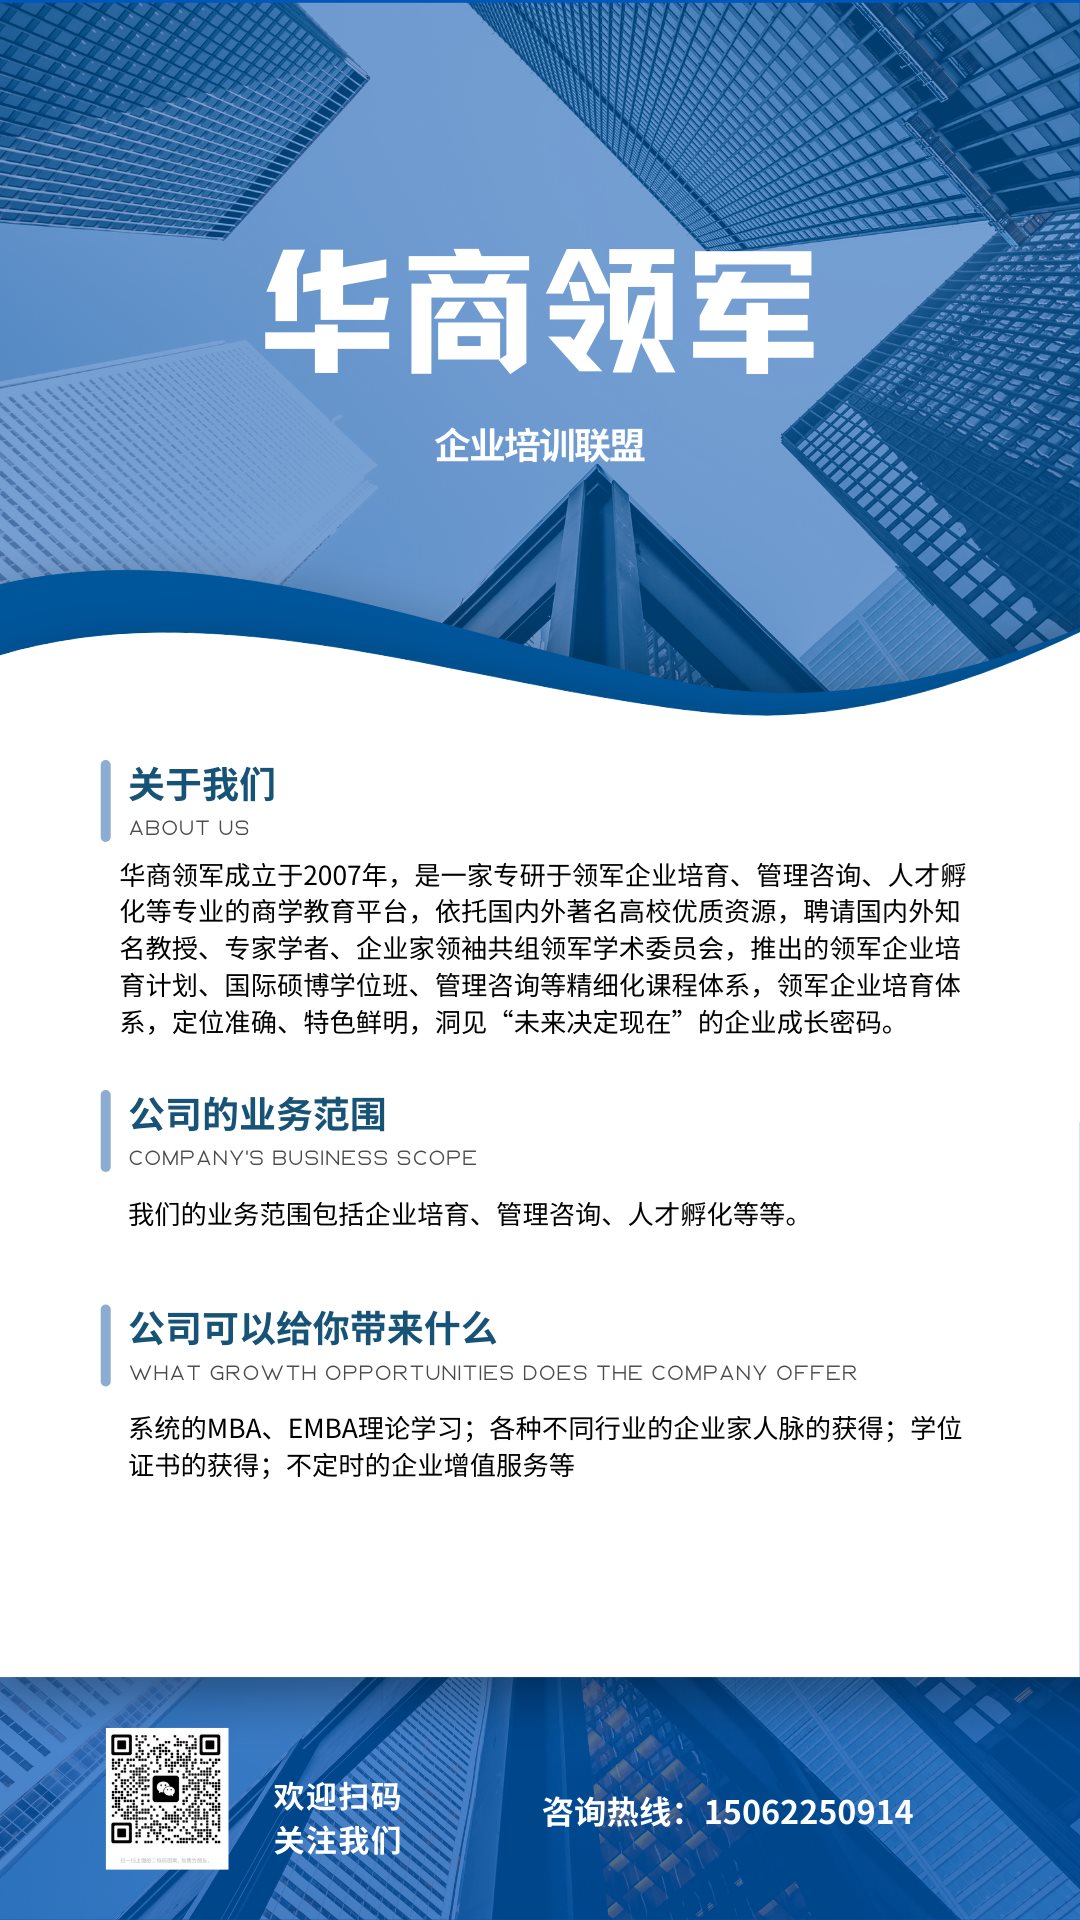 蓝白色商务企业宣传手机海报 (2).png